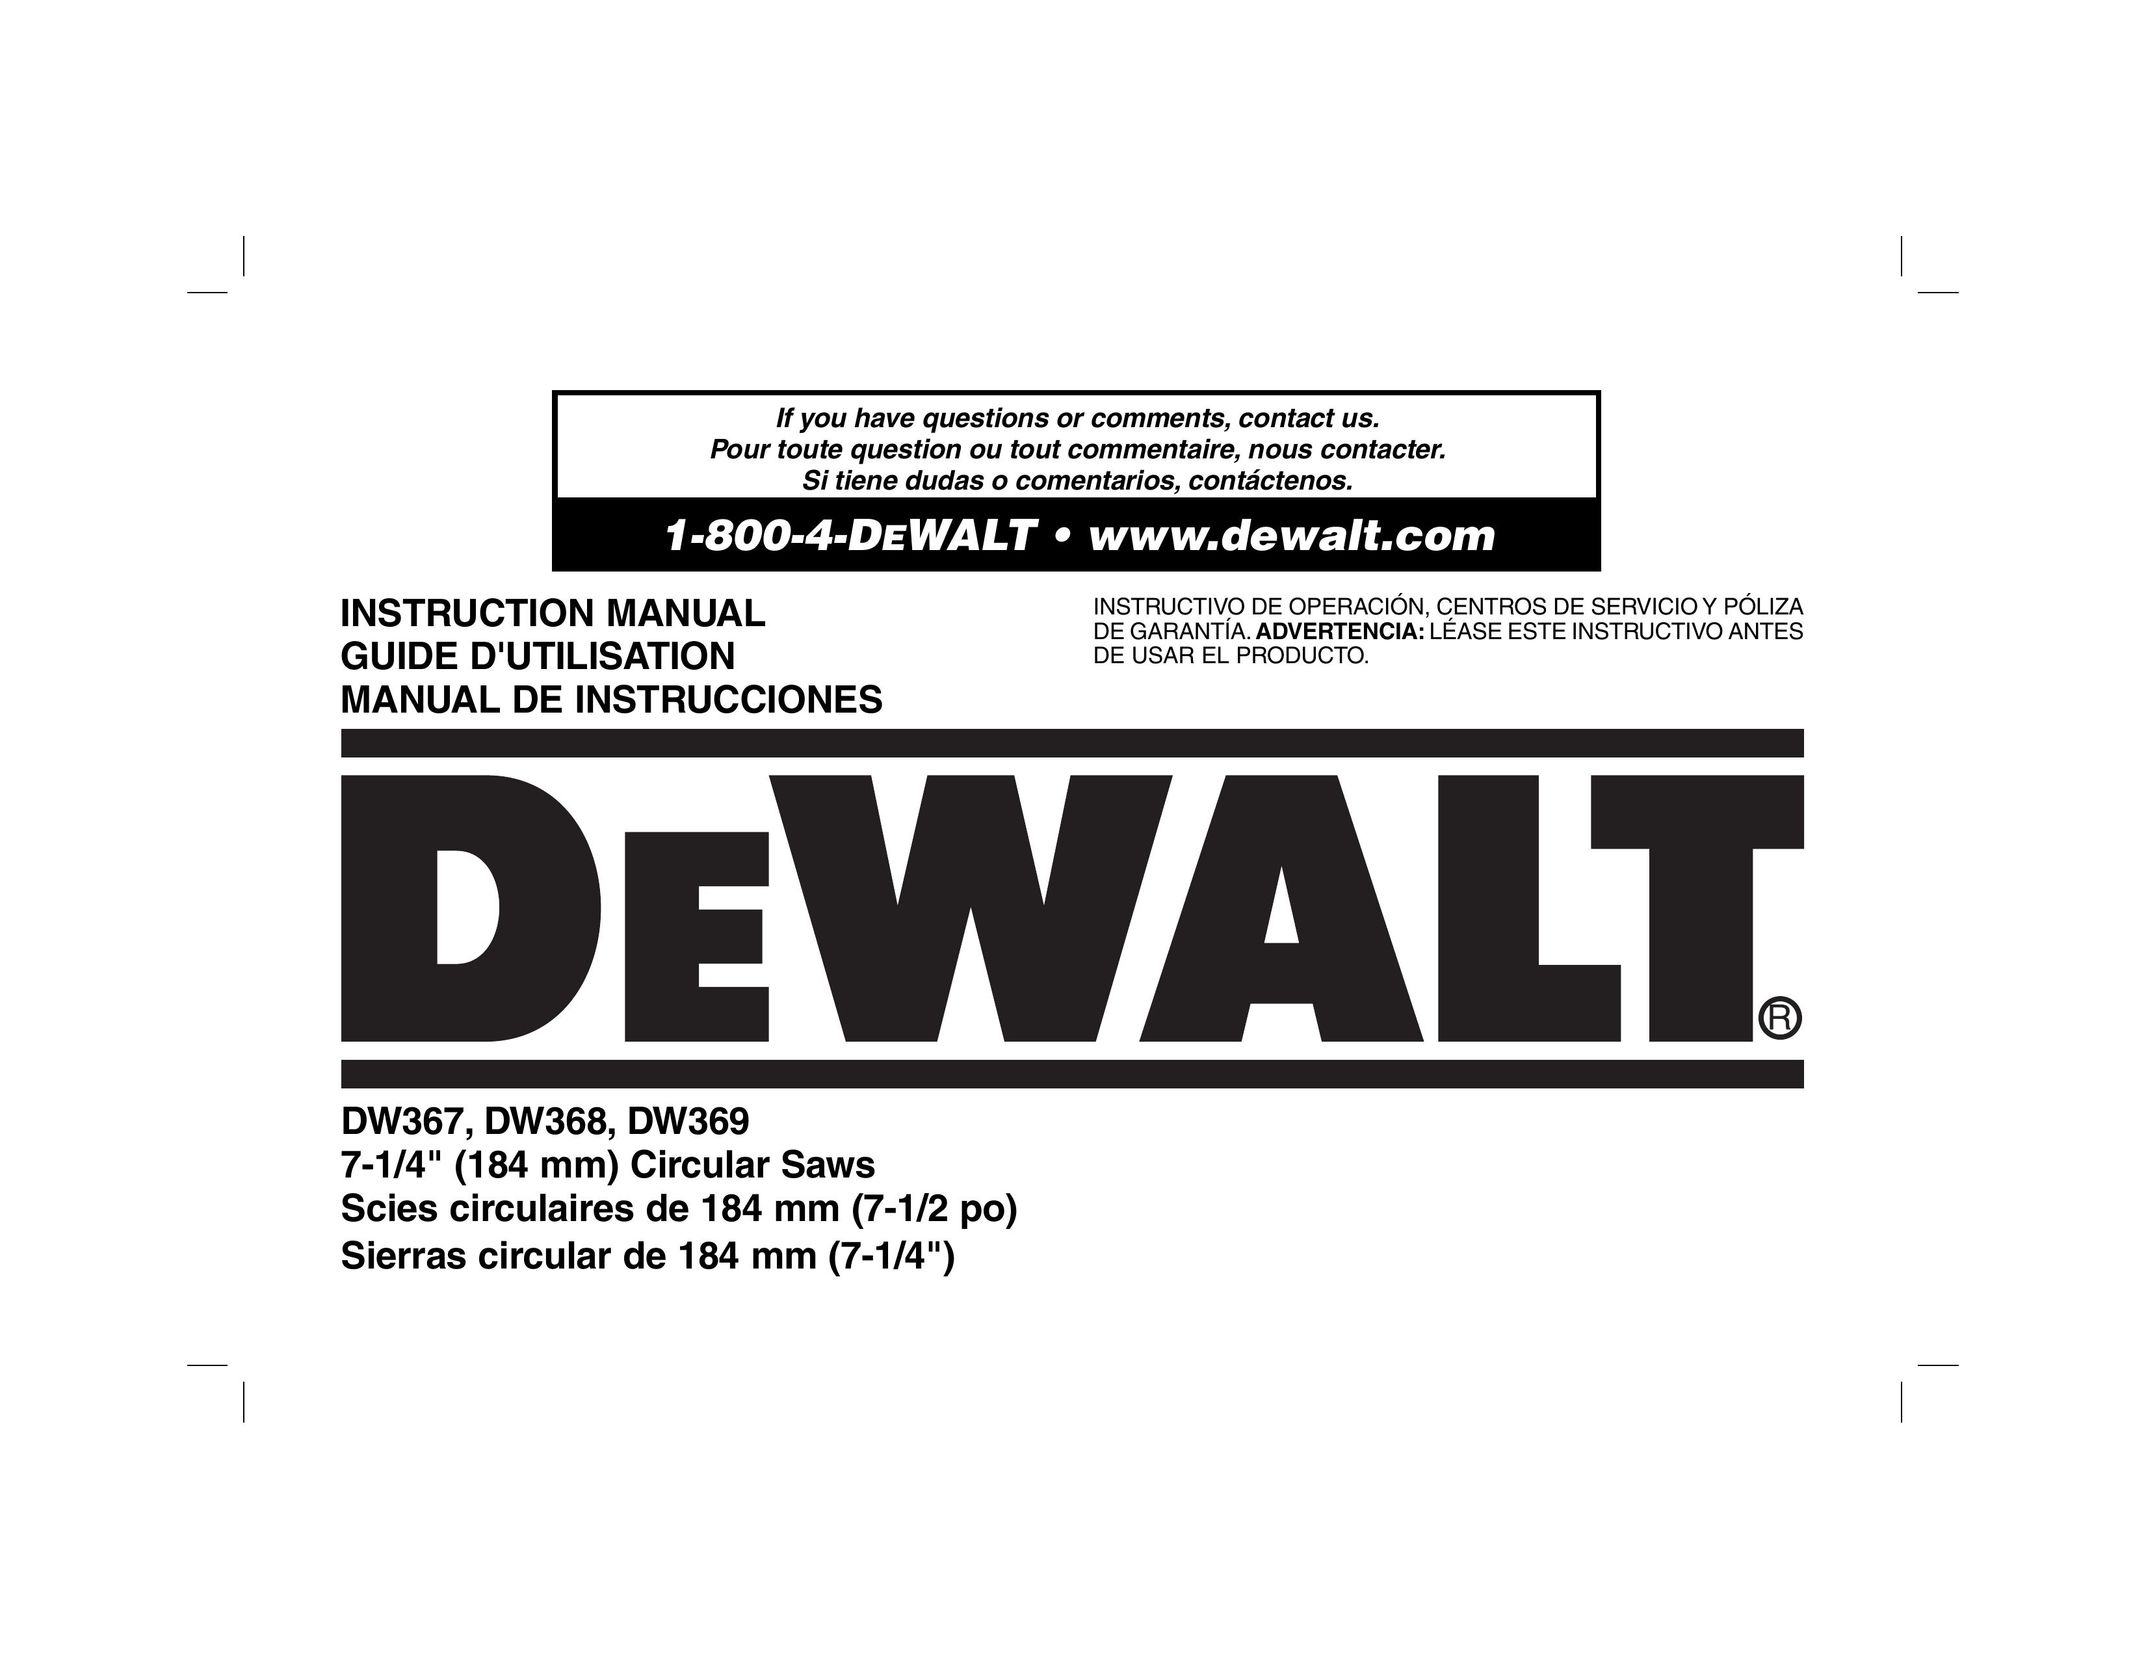 DeWalt DW367 Saw User Manual